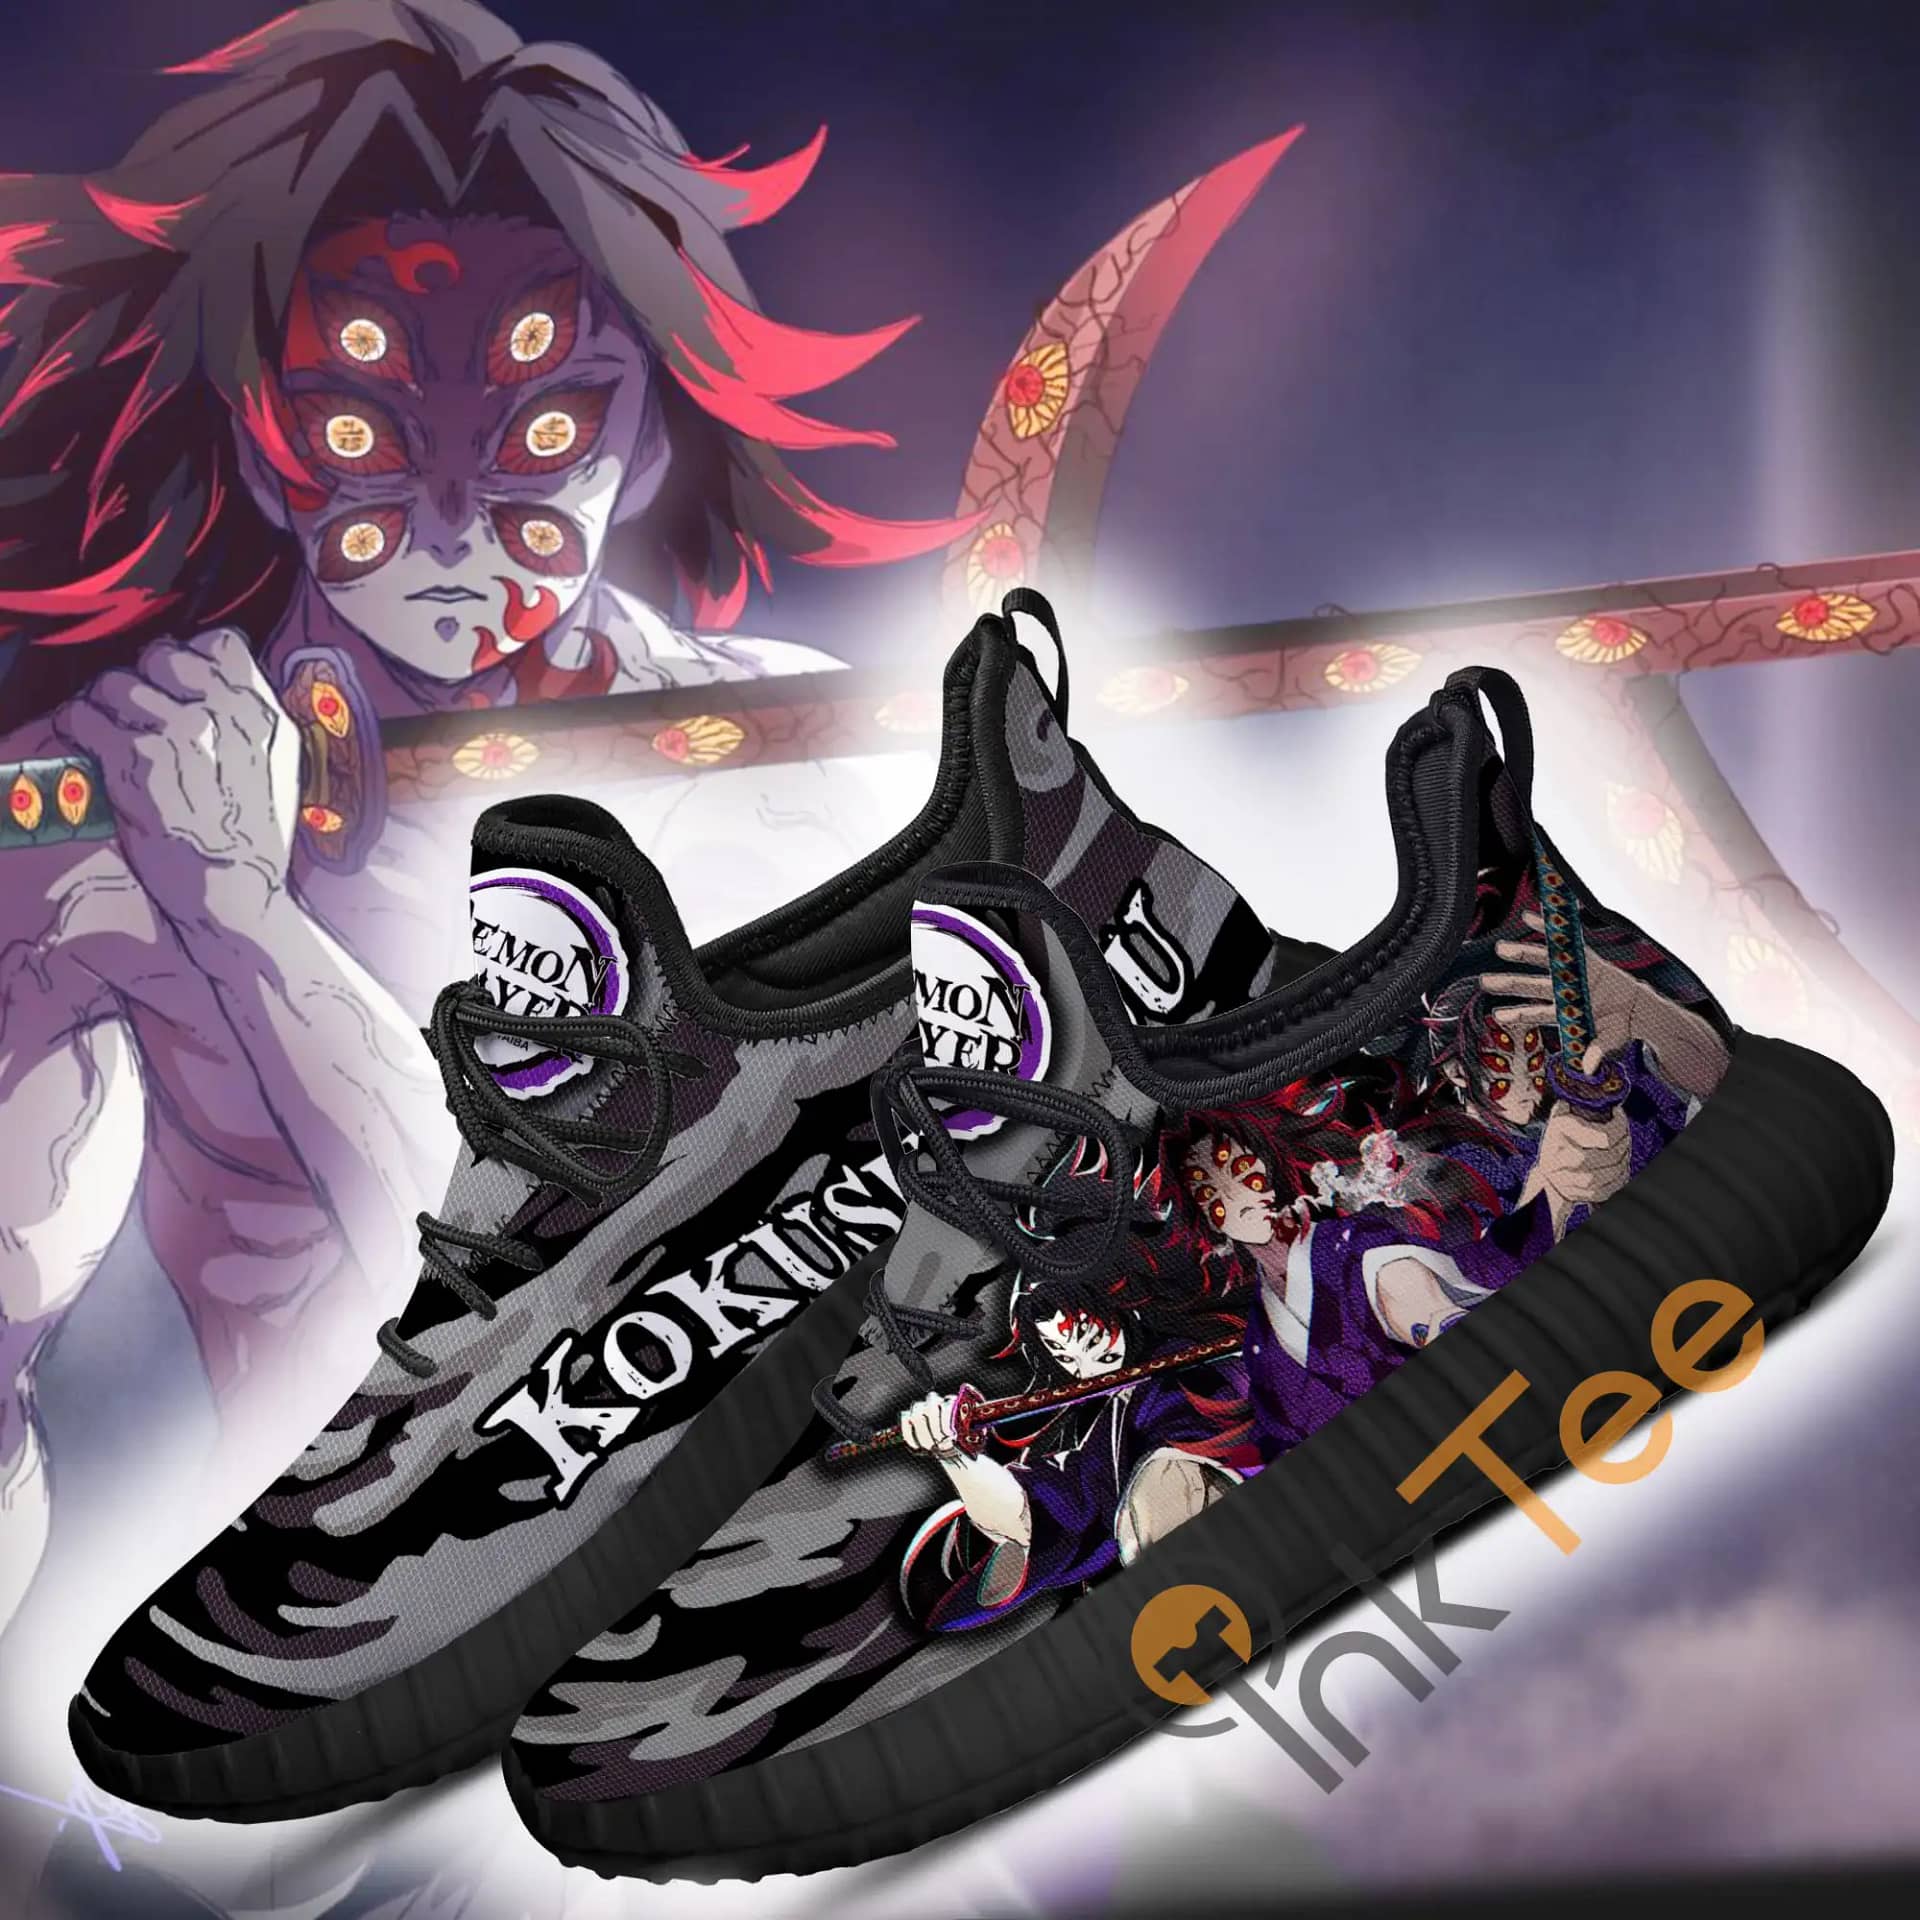 Inktee Store - Demon Slayer Kokushibou Custom Anime Amazon Reze Shoes Image